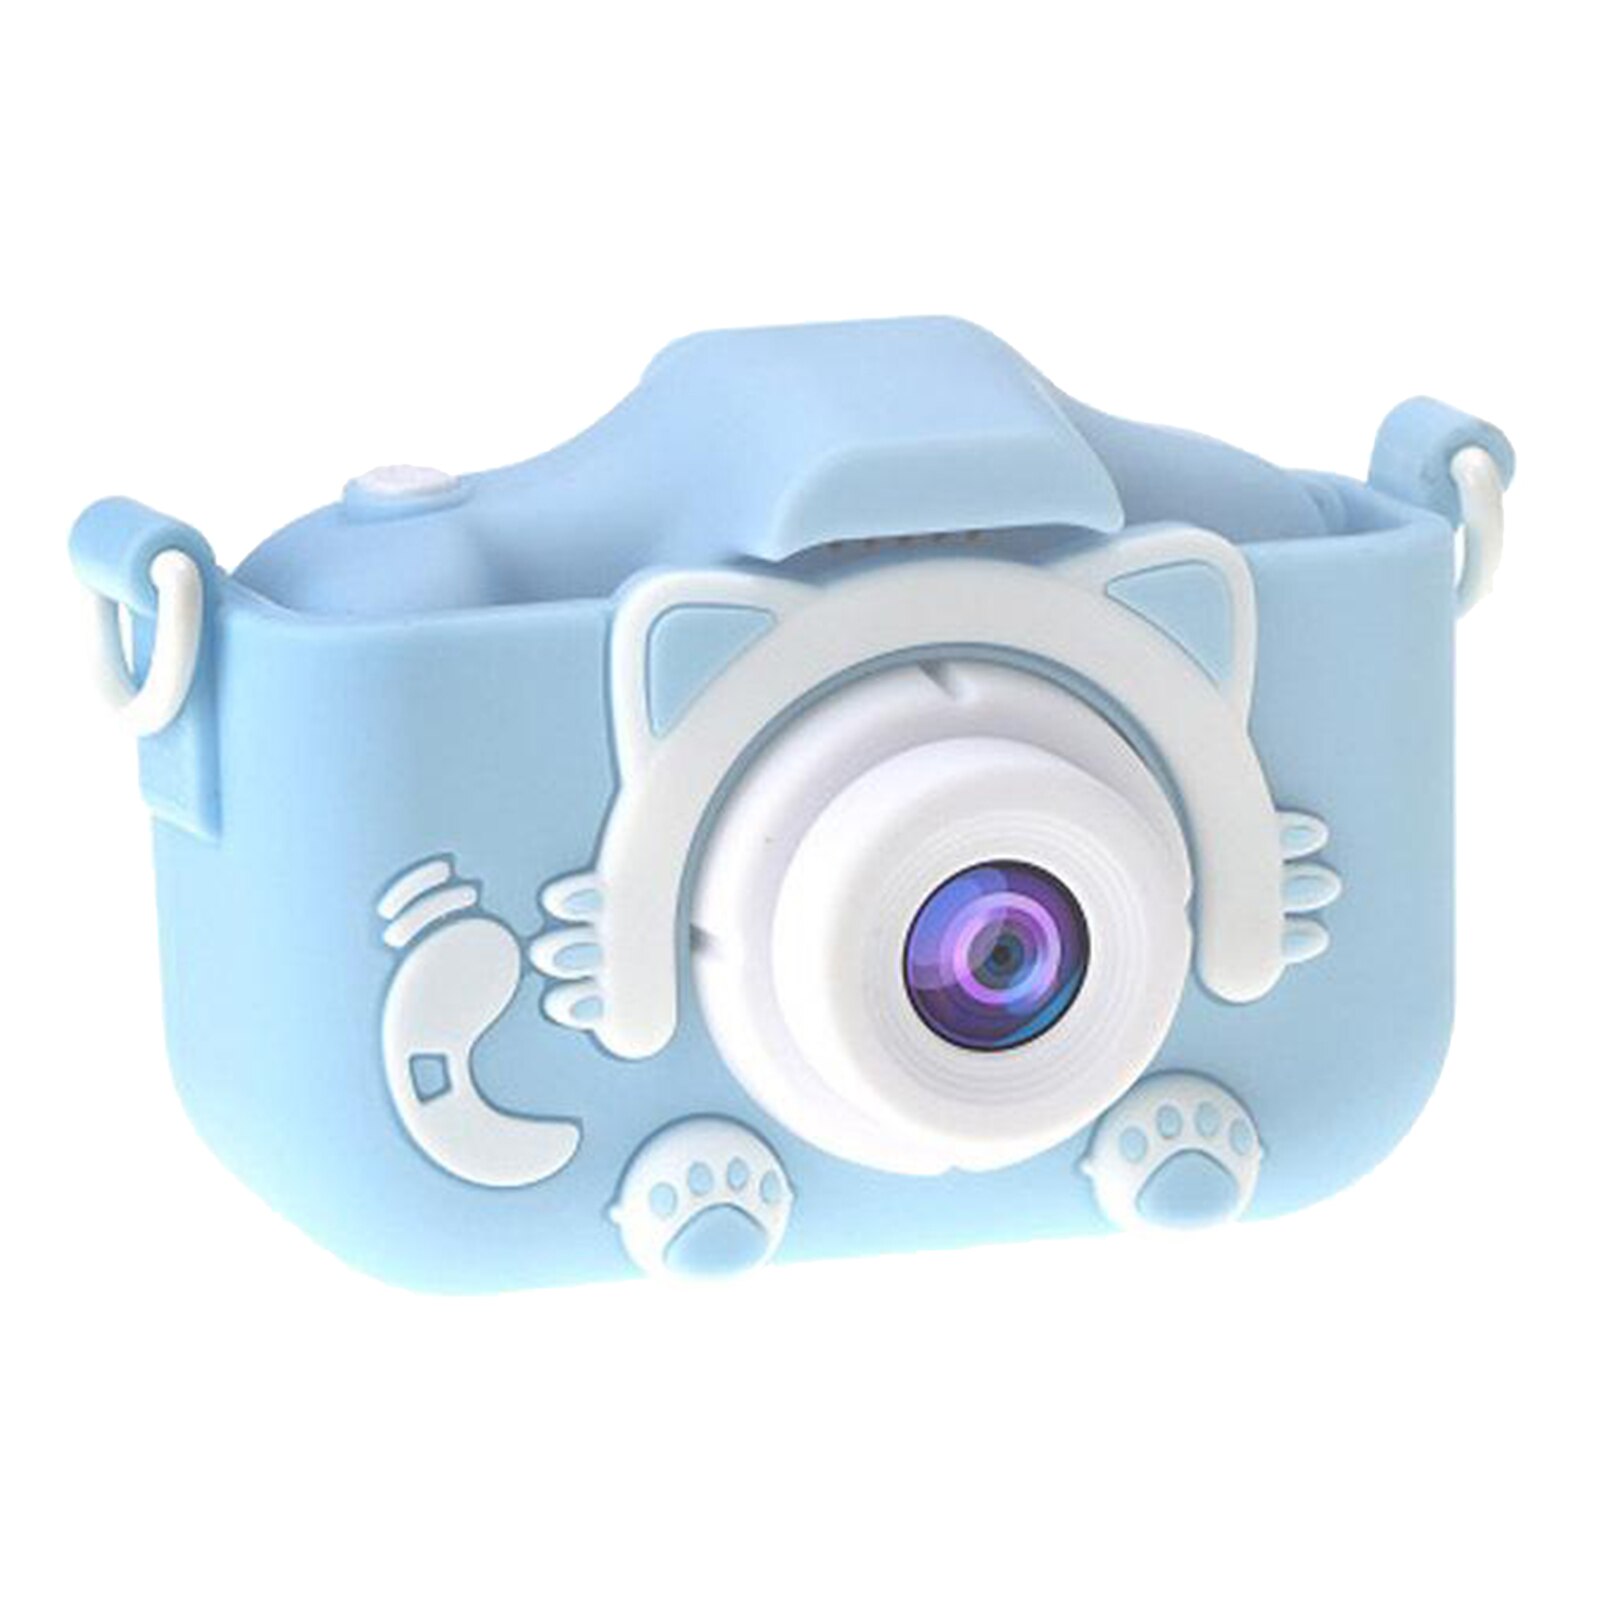 2.0 ''Mini Digitale Kinderen Camera Hd 1080P Ips Camera Speelgoed Cadeau Voor Kinderen: Blue Cat